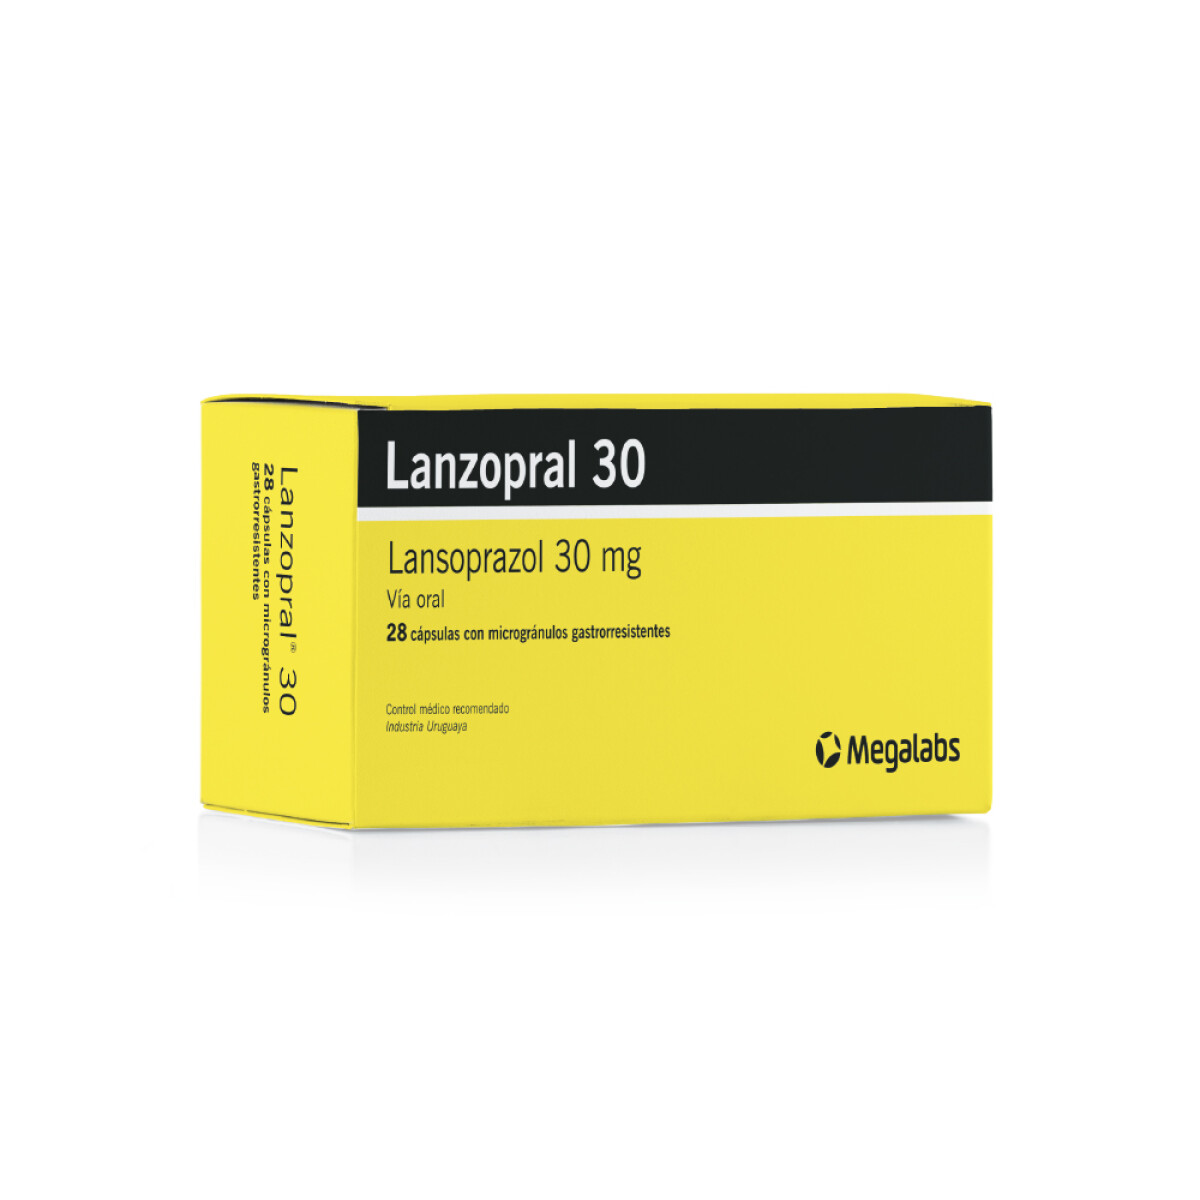 Lanzopral 30 mg 